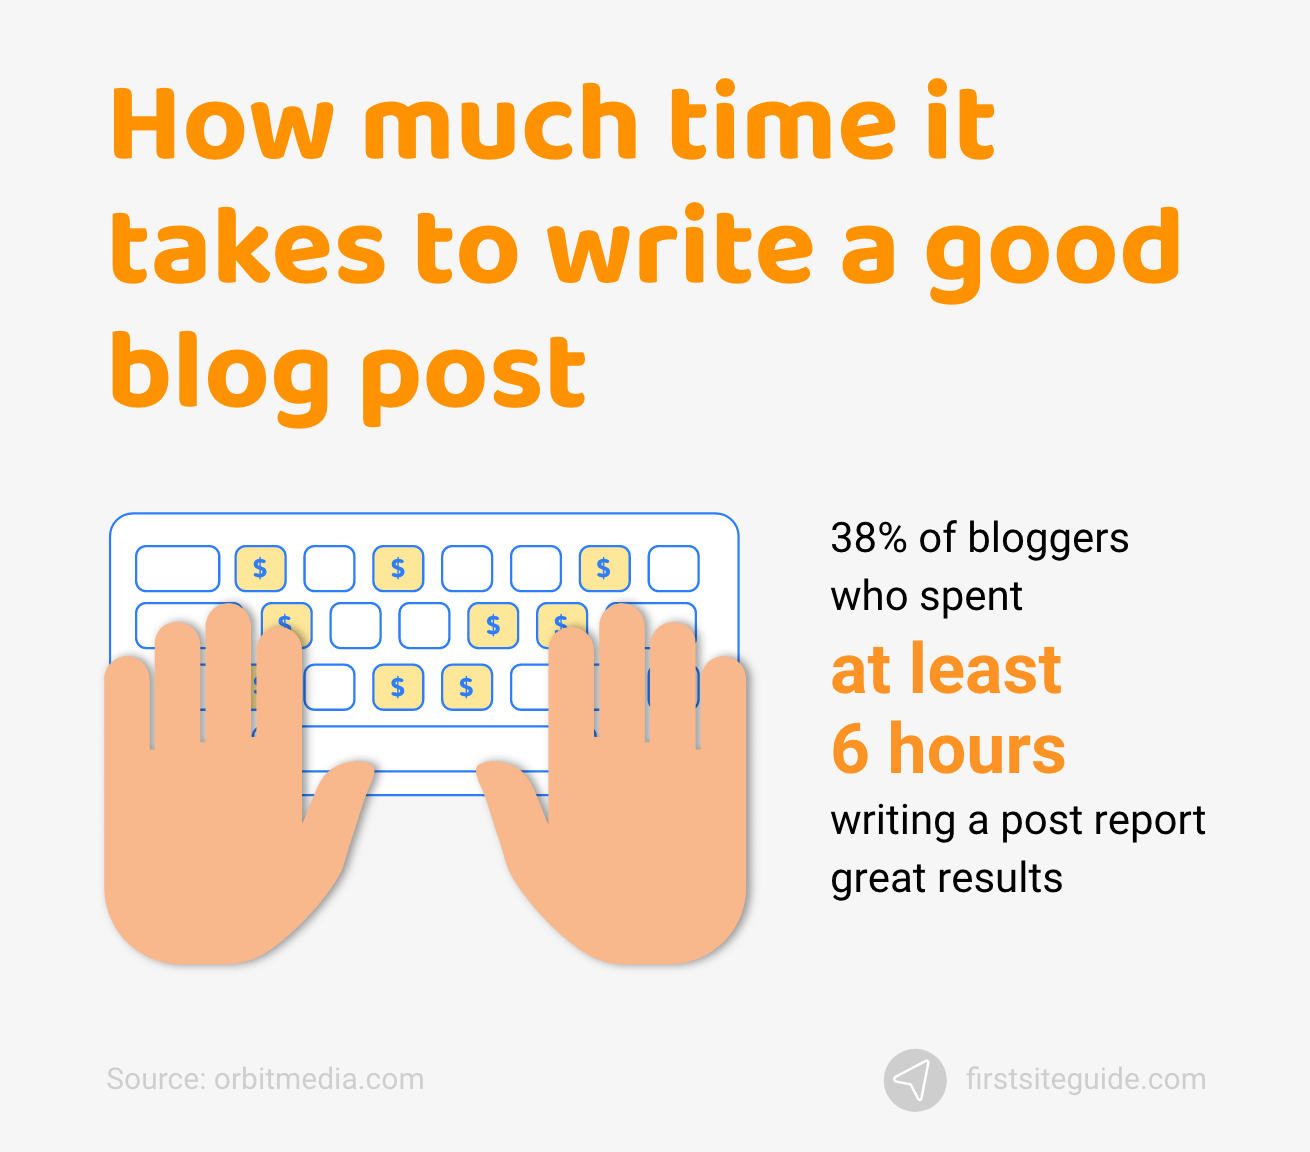 İyi bir blog yazısı yazmak ne kadar zaman alır?